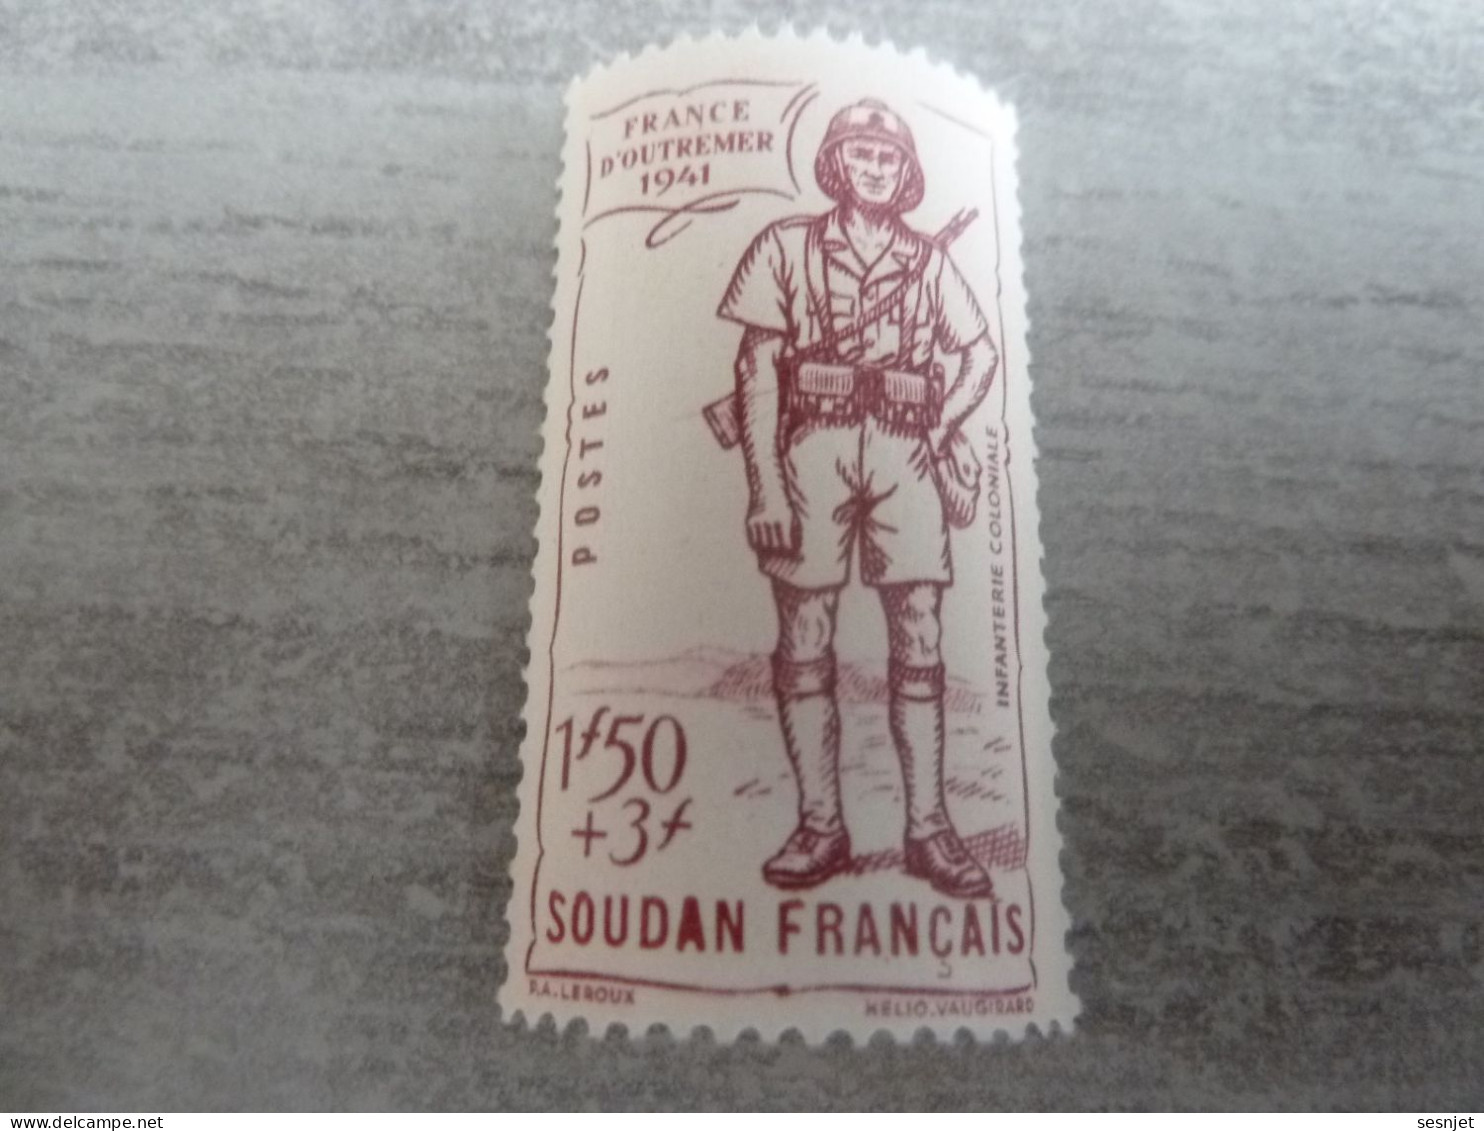 Soudan - Défense De L'Empire - Infanterie Coloniale - 1f.50+3f. - Yt 123 - Lilas - Neuf Sans Trace - Année 1941 - - Nuovi